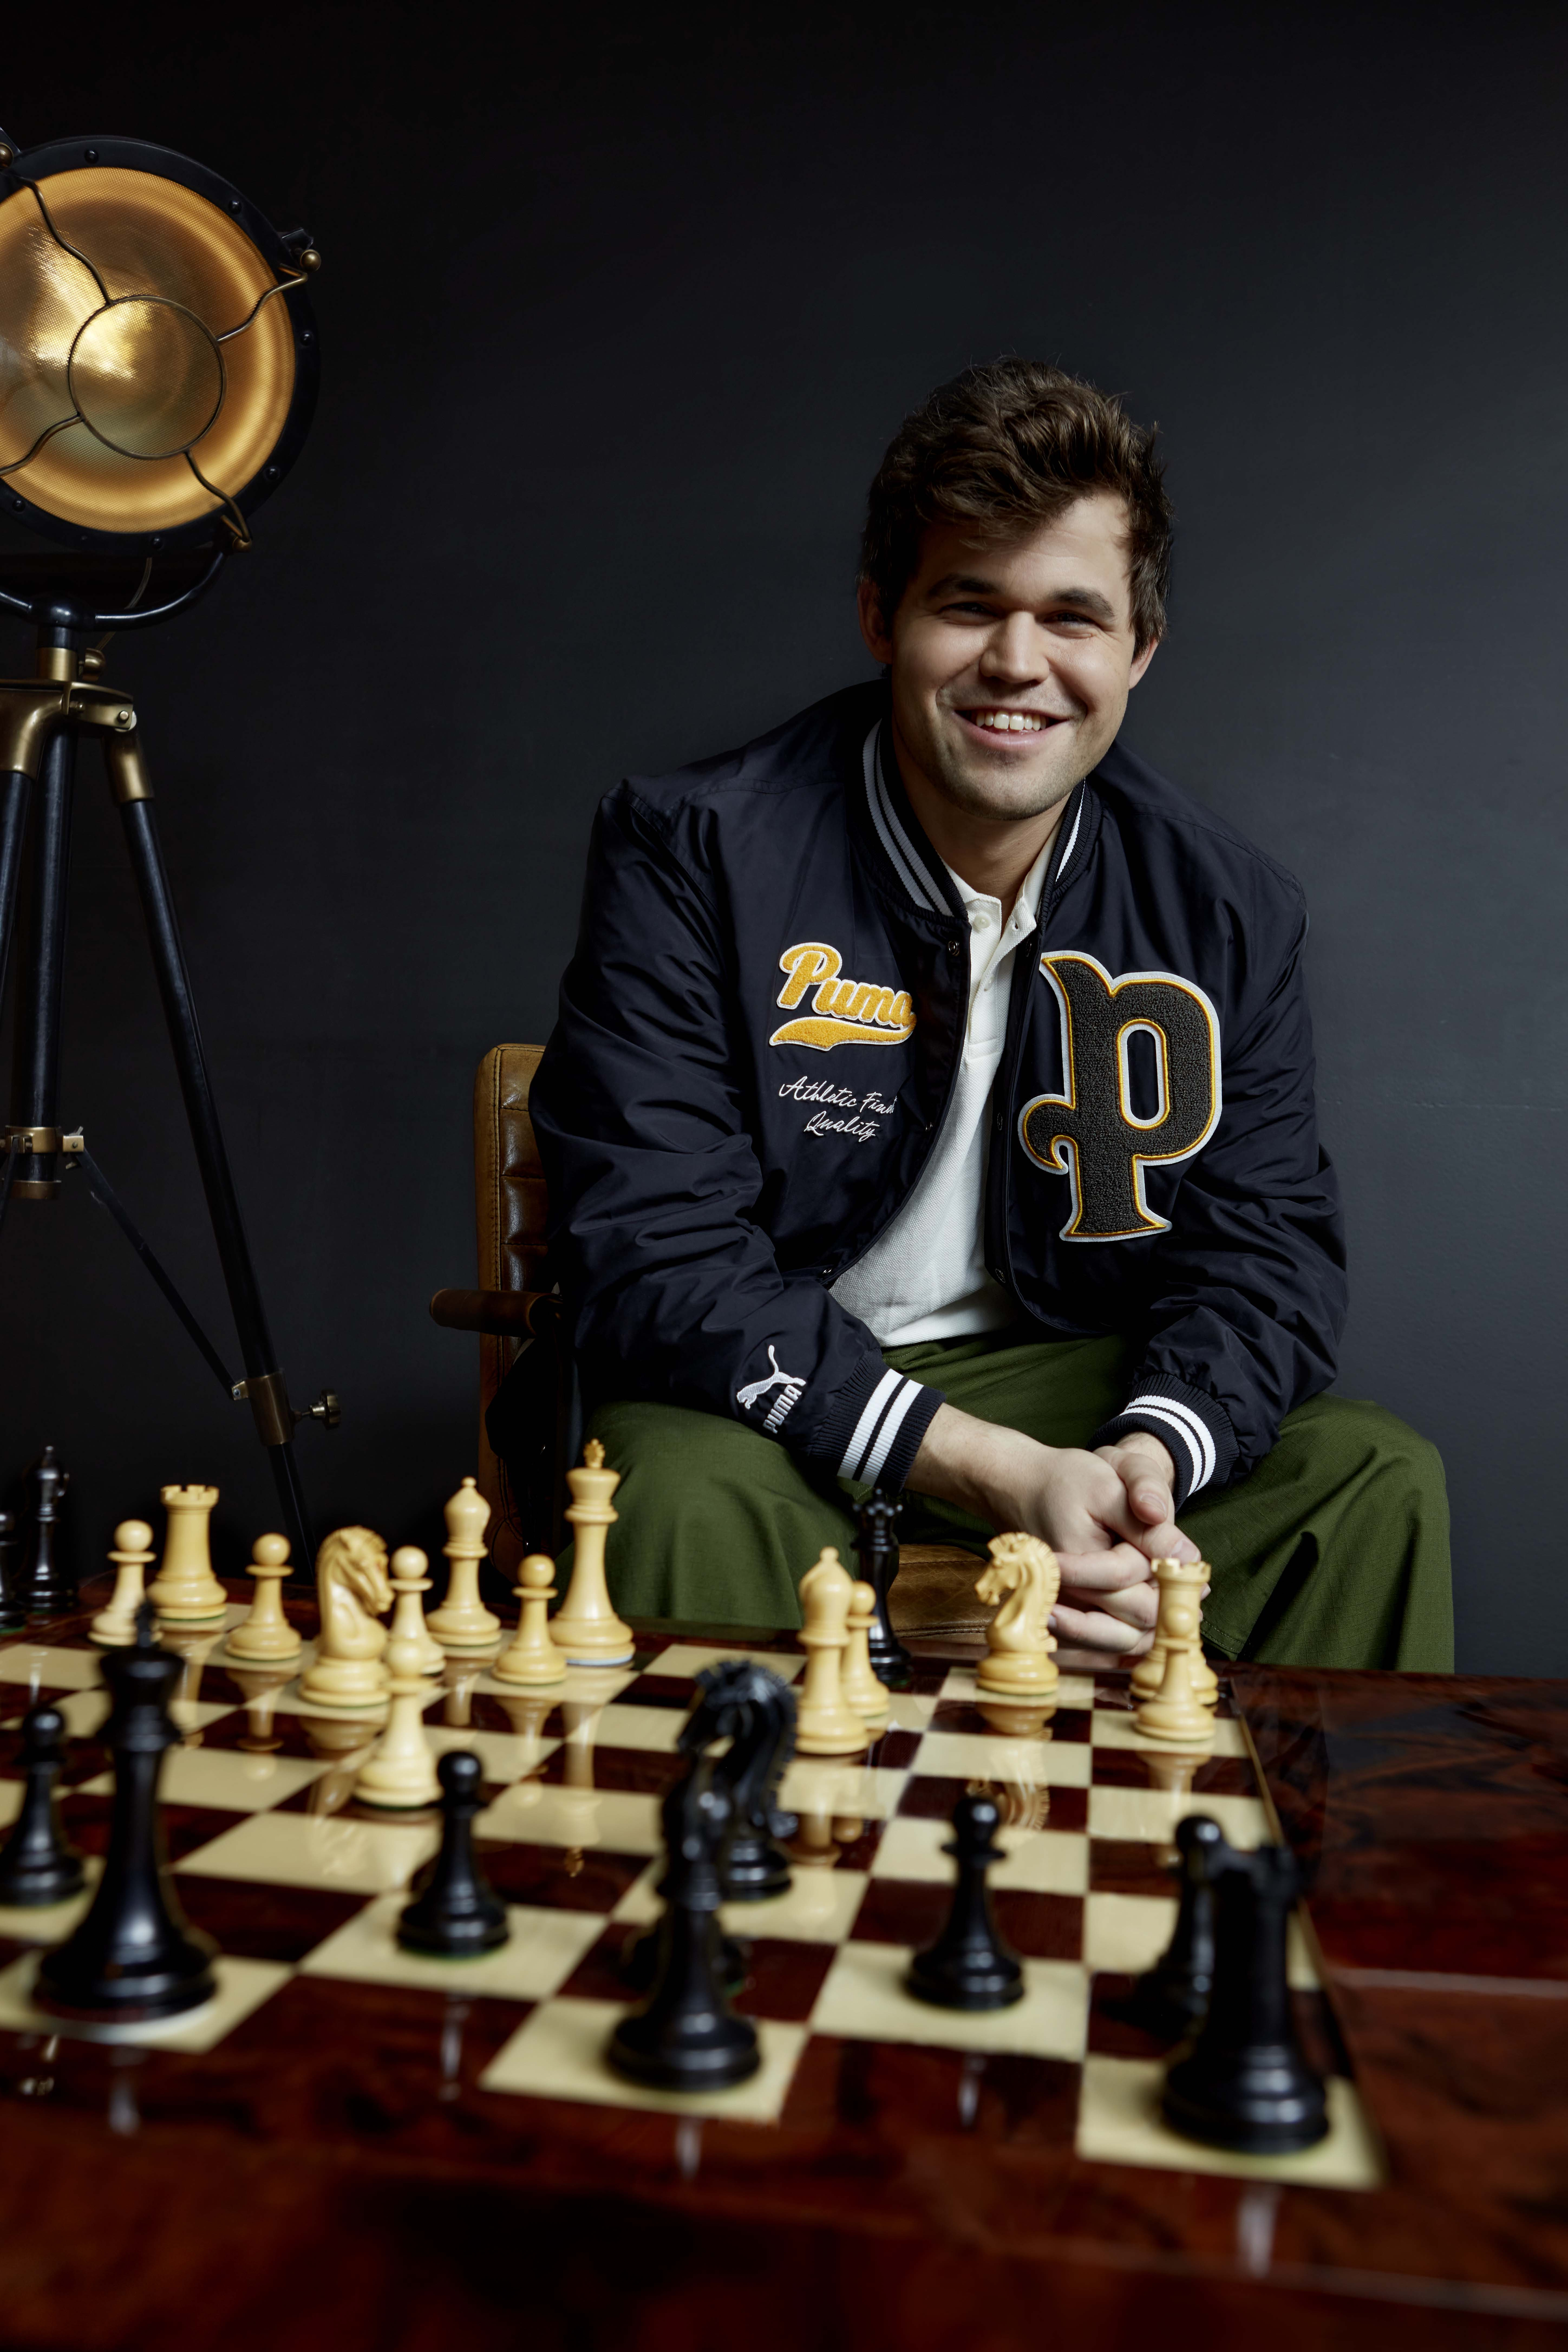 Magnus Carlsen: World Chess Champion and Norwegian Grandmaster